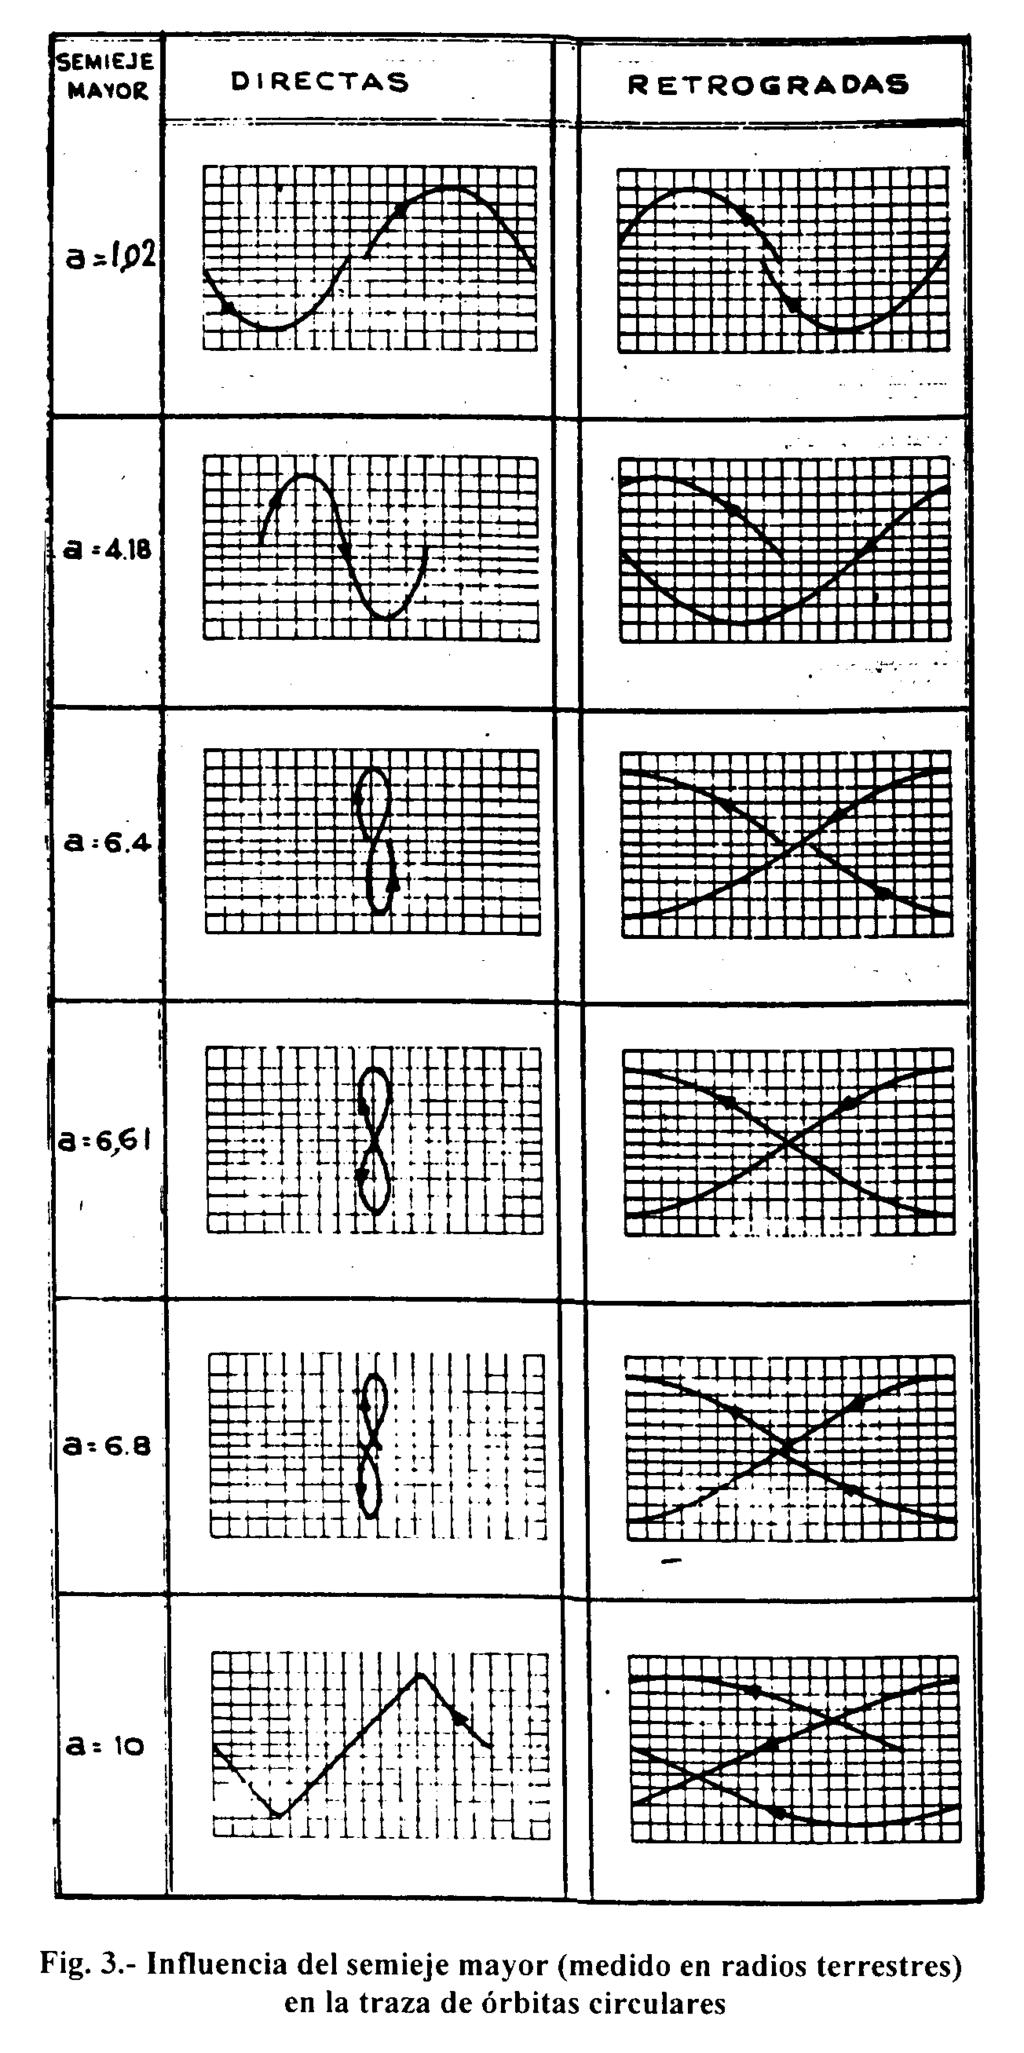 Trazas (Groundtracks) Cobertura Visibilidad Cálculo de la Traza II En el caso circular, las ecuaciones son, por tanto: φ(t) = arc sen sen ω + θ 0 + t µ ( λ(t) = Ω GST 0 ω t + arctan tan ) 3 R +h sen